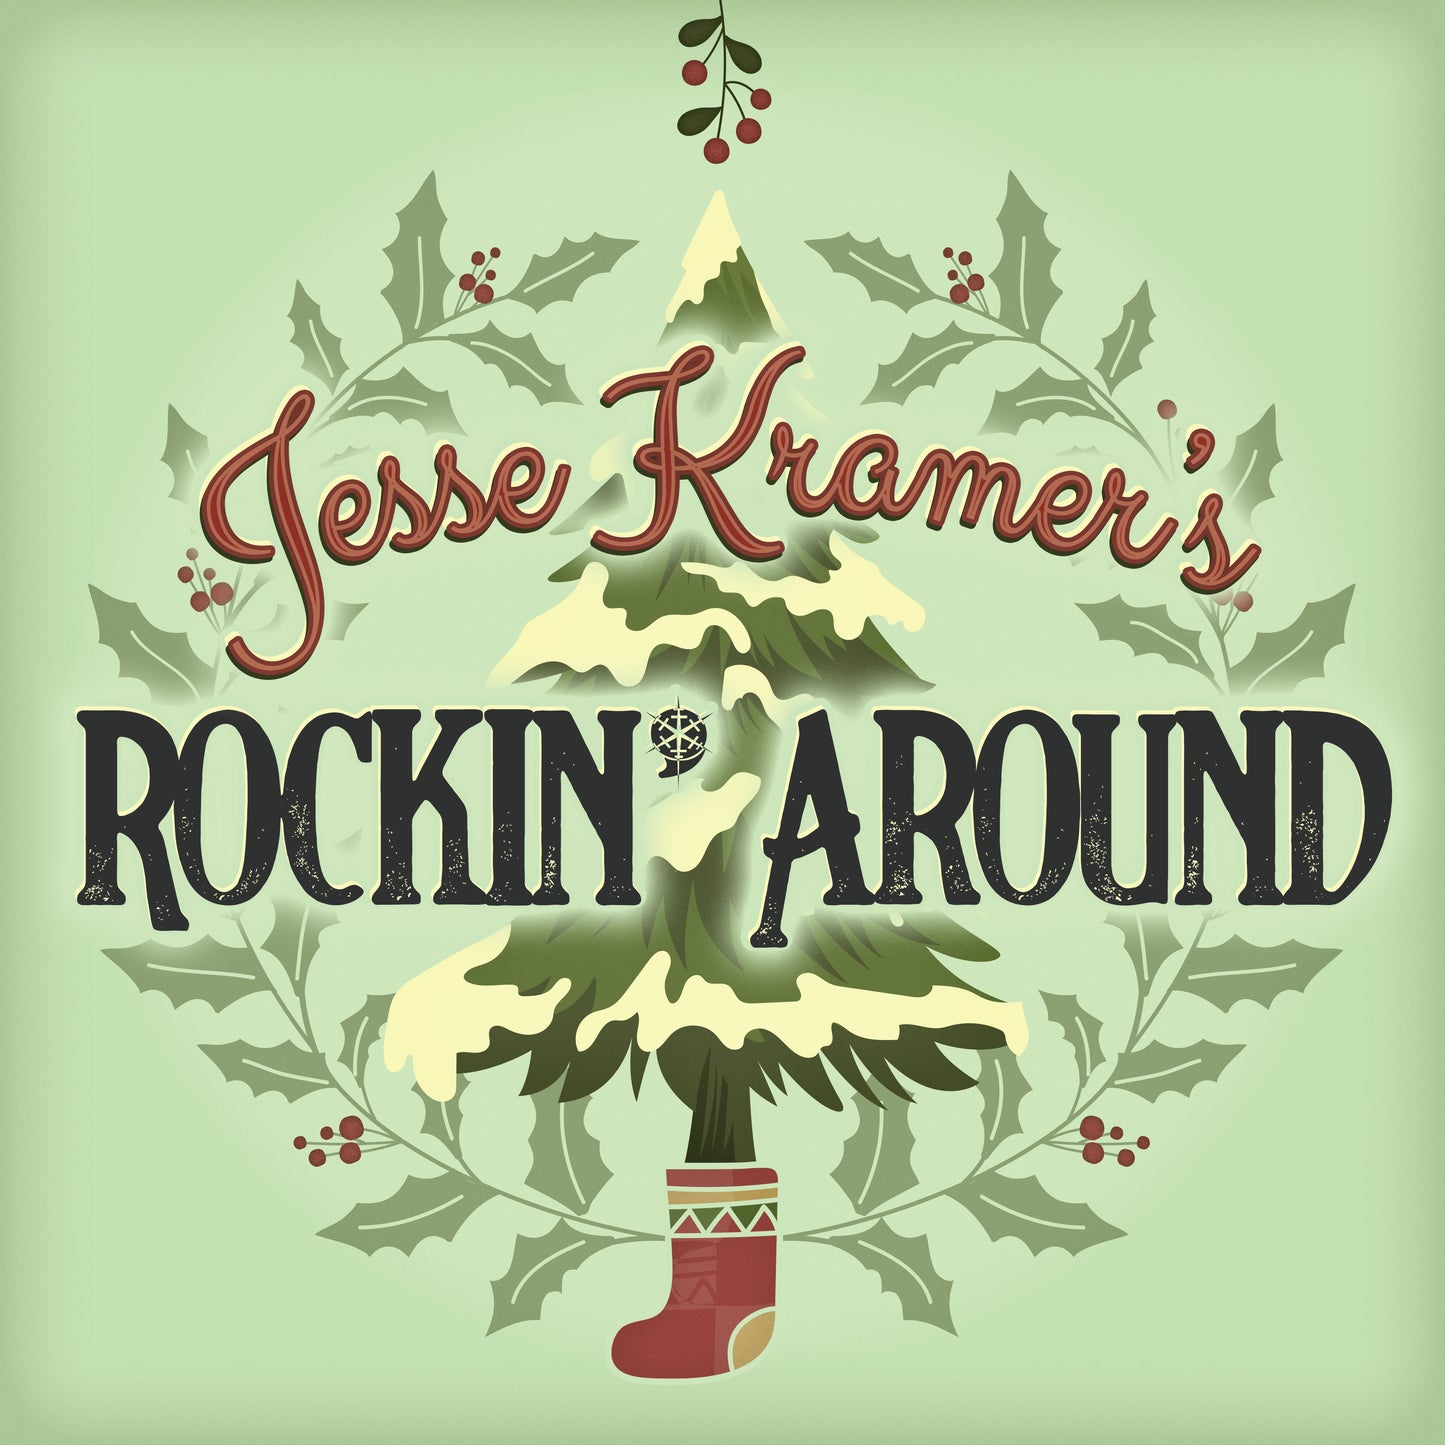 Jesse Kramer's Rockin' Around